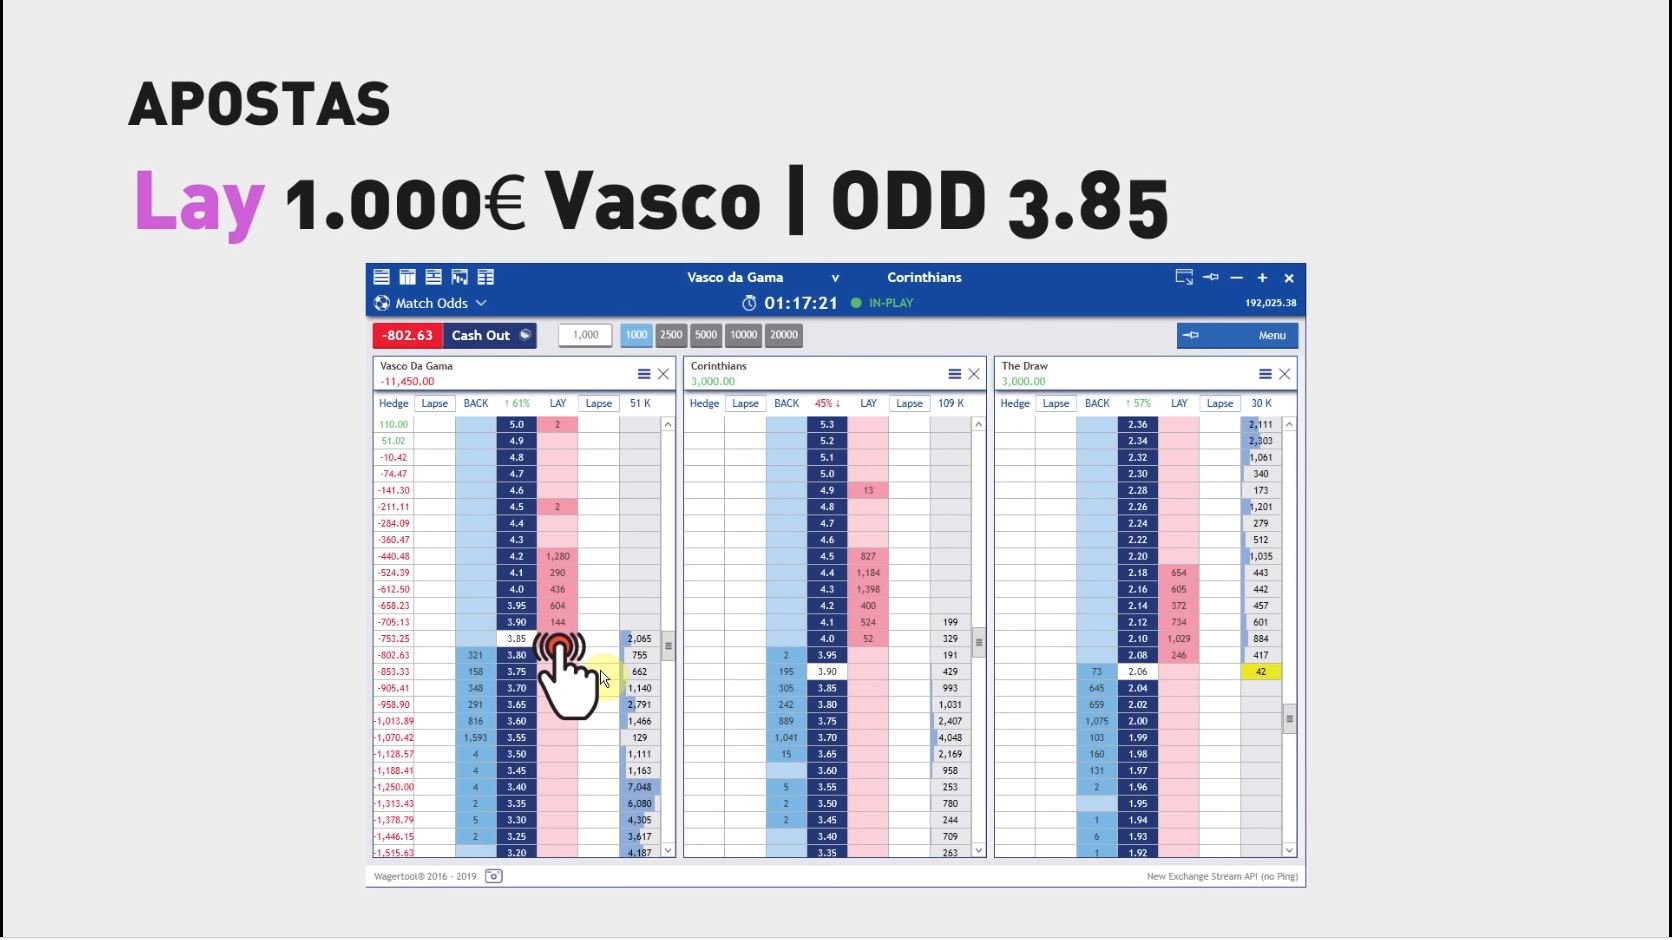 Reforçar novamente Lay ao Vasco com aposta de 1000€, à odd 3.85.